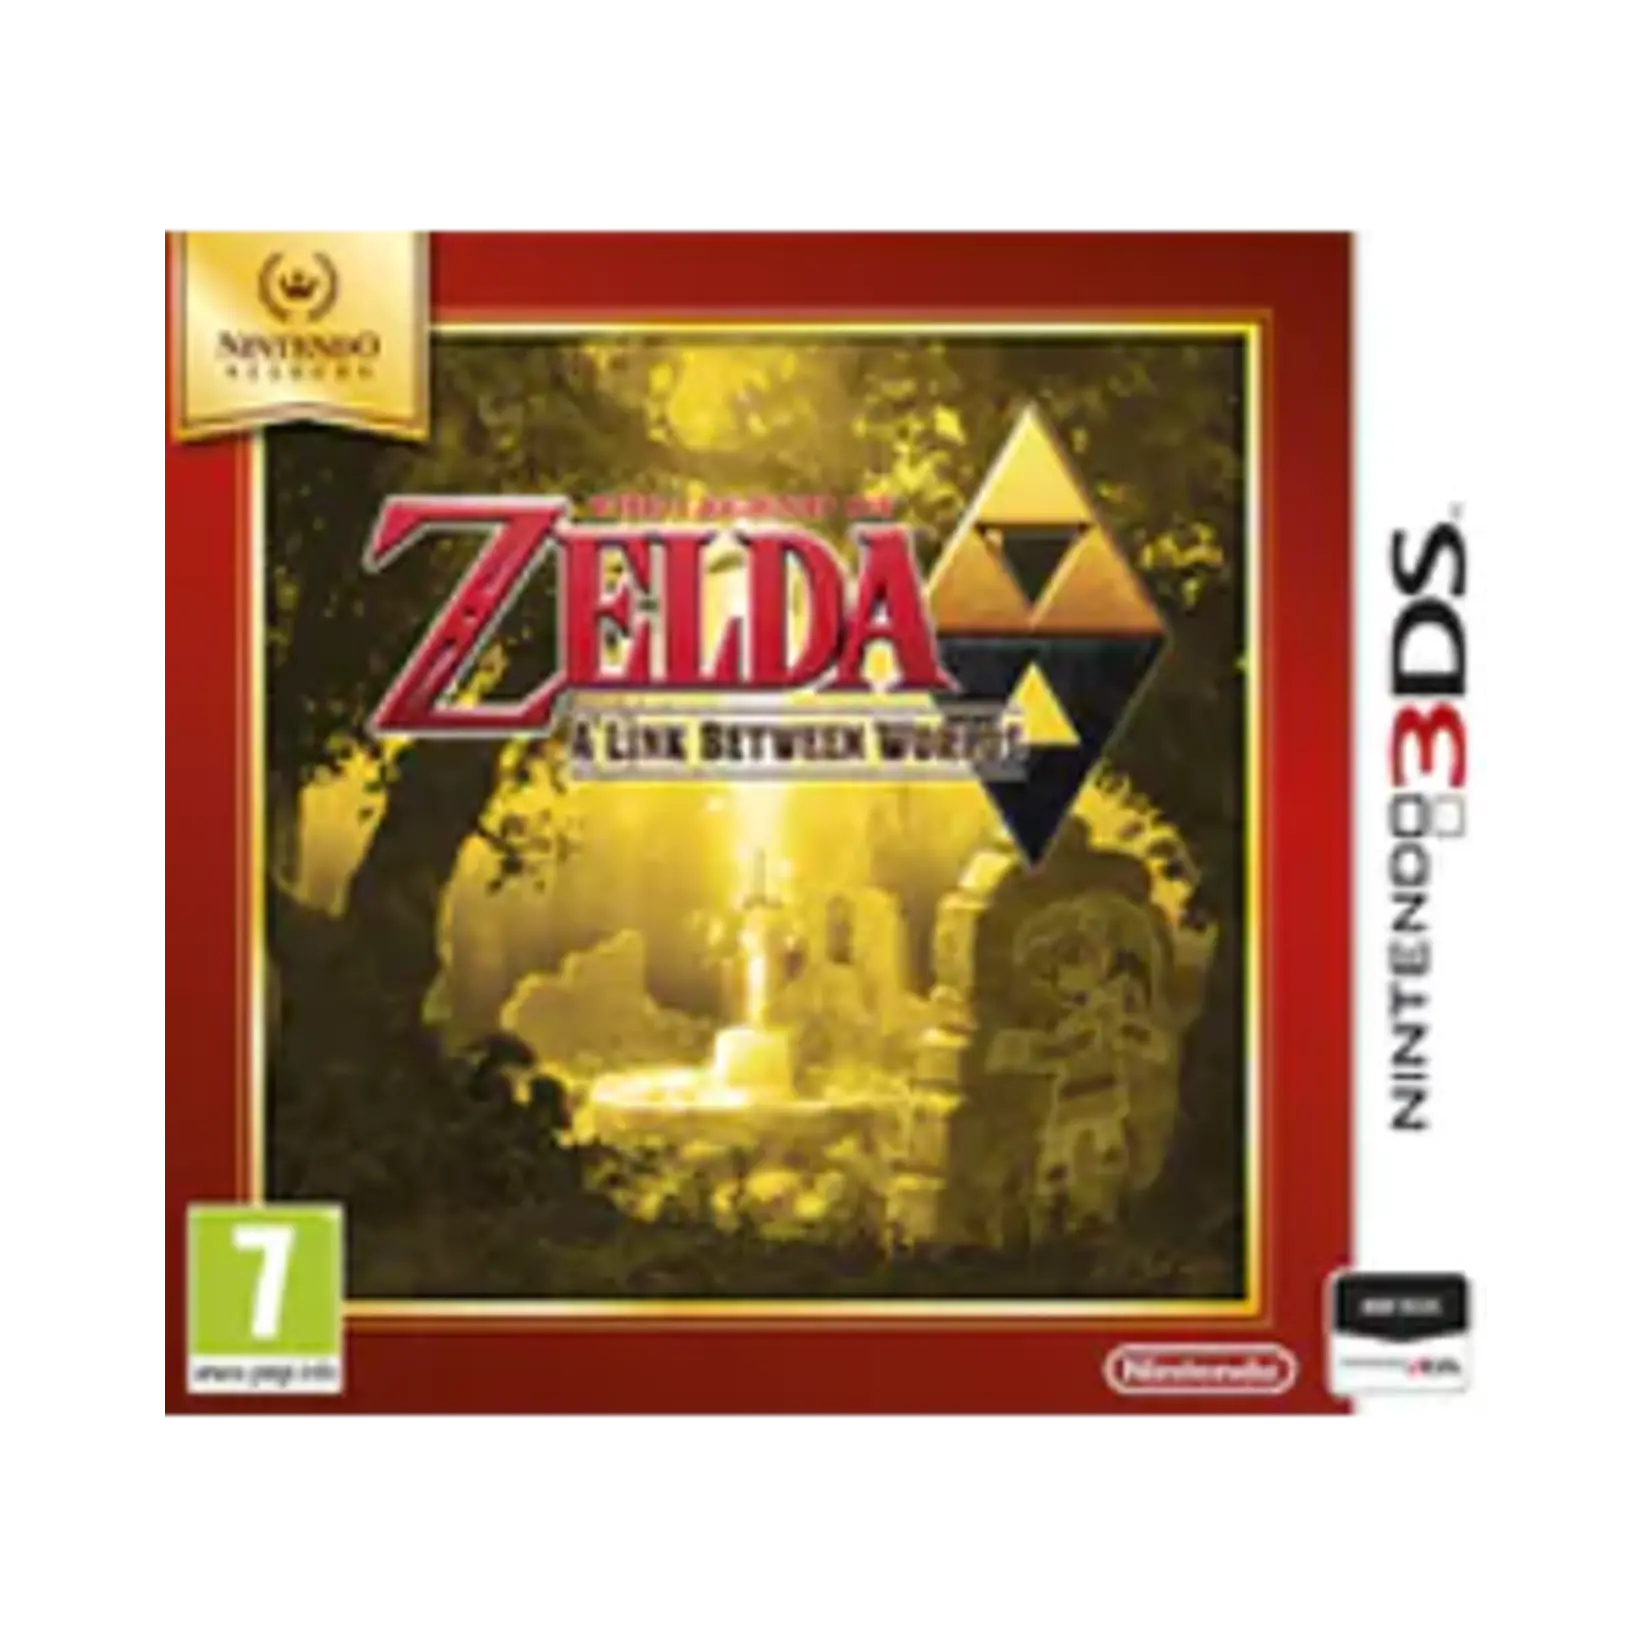 Zelda a link between worlds